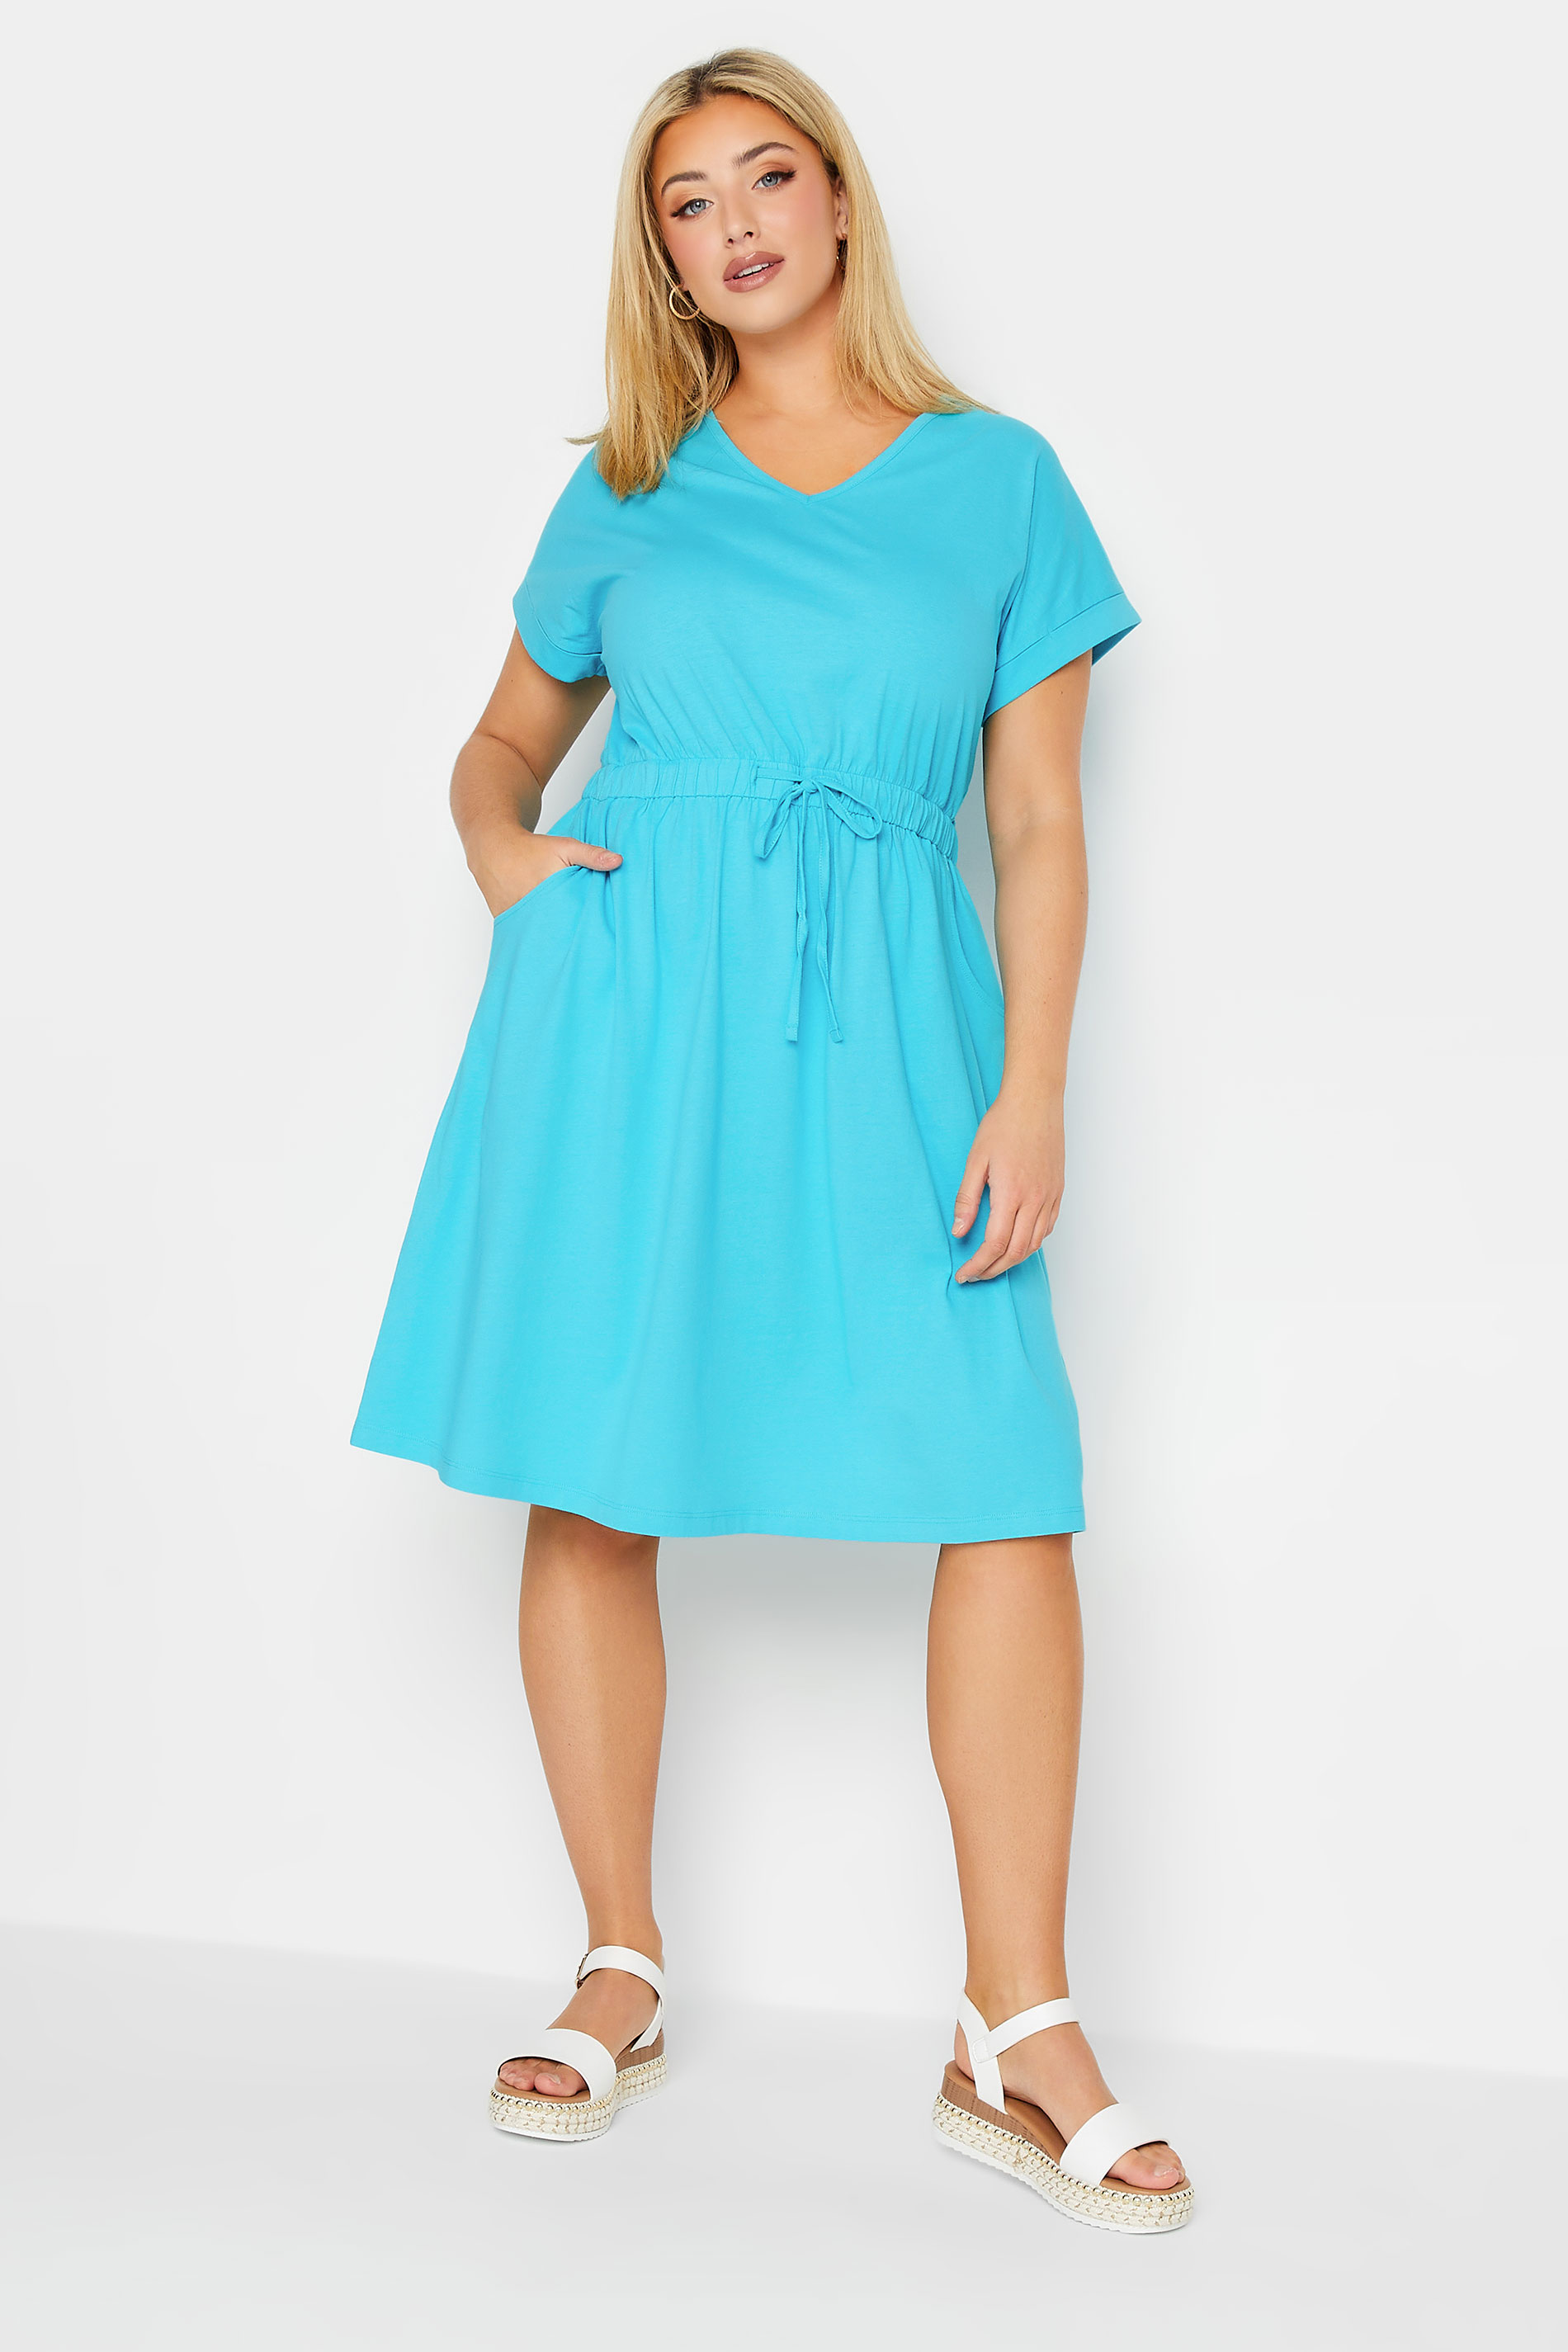 Plus Size Blue Cotton T-Shirt Dress | Yours Clothing 1